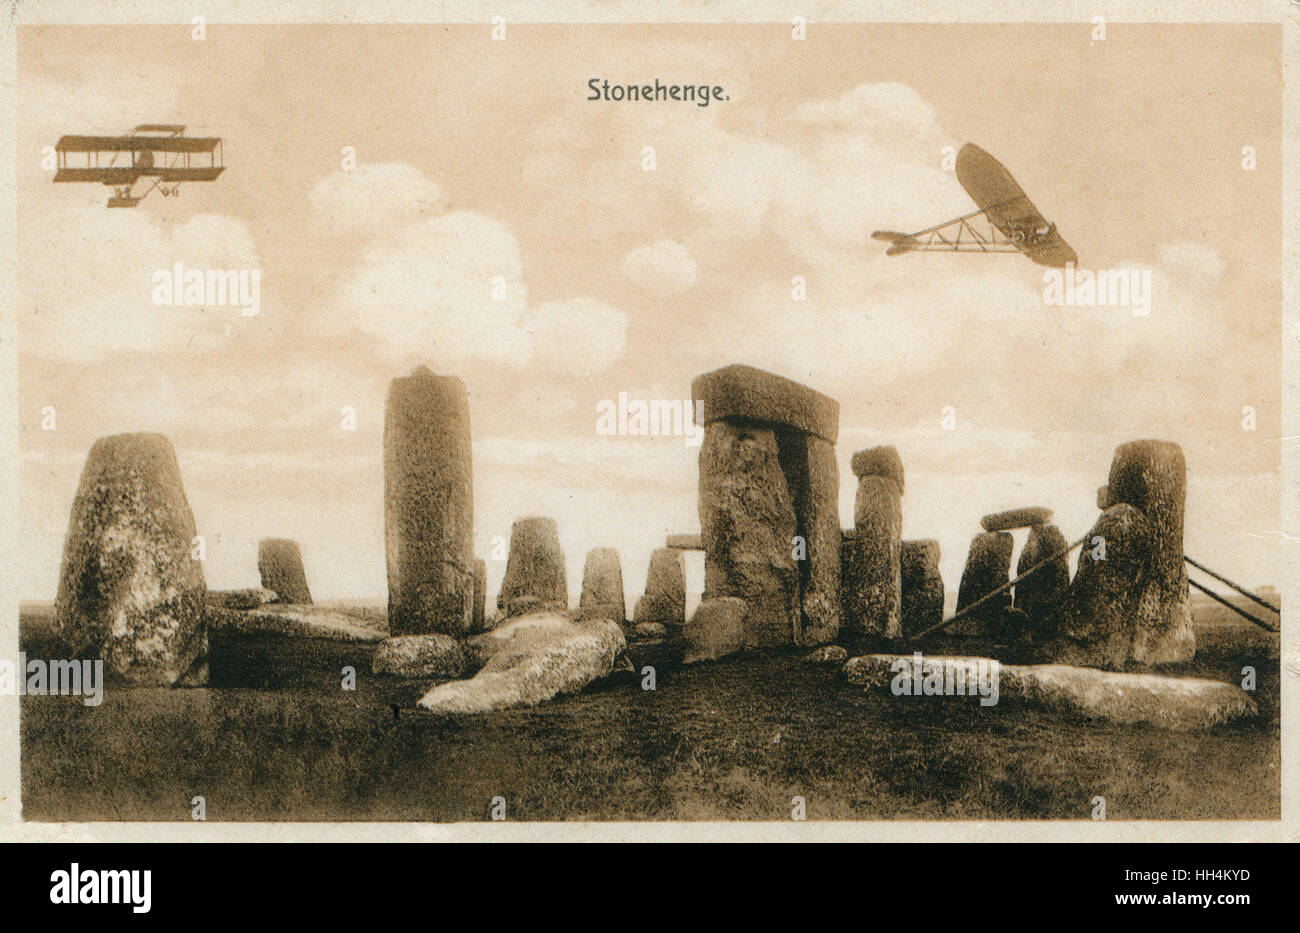 Frühe britische Militärflugzeuge auf Manöver auf Salisbury Plain - hier oben Stonehenge (Wiltshire) abgebildet. Das Flugzeug auf der linken Seite ist ein Bristol Boxkite Doppeldecker. Vier im Jahr 1911 durch das Kriegsministerium angekauft und Beispiele wurden nach Russland und Australien verkauft Stockfoto